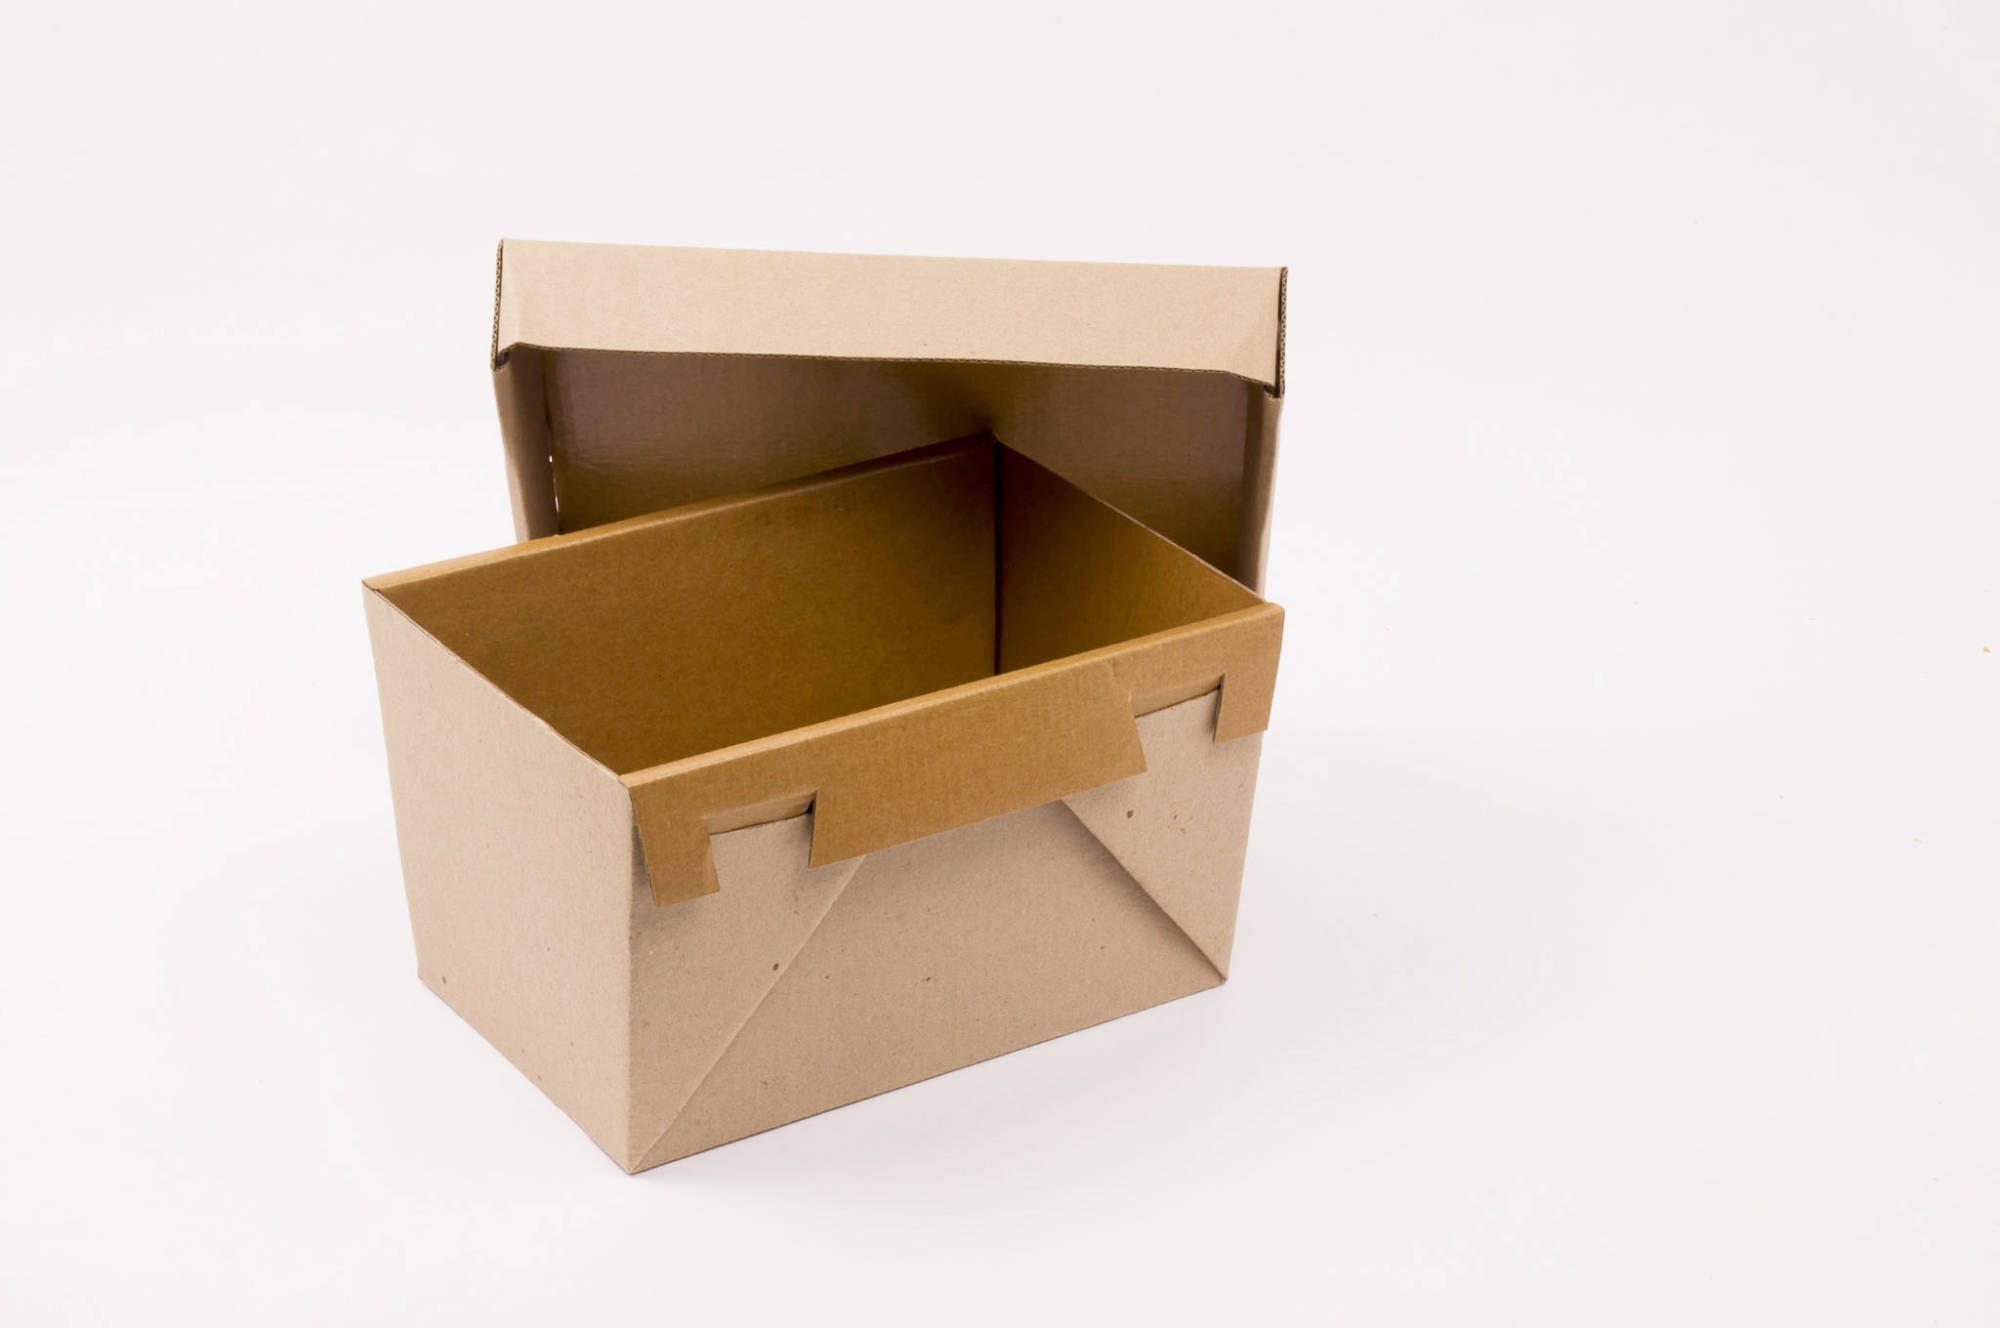 cajas corrugado, comprar caja desmoldante, precio caja desmoldante, cajas que resisten alta temperatura,  cajas para contener productos fundidos, cajas desmoldantes, cajas estancas, cajas autoportantes